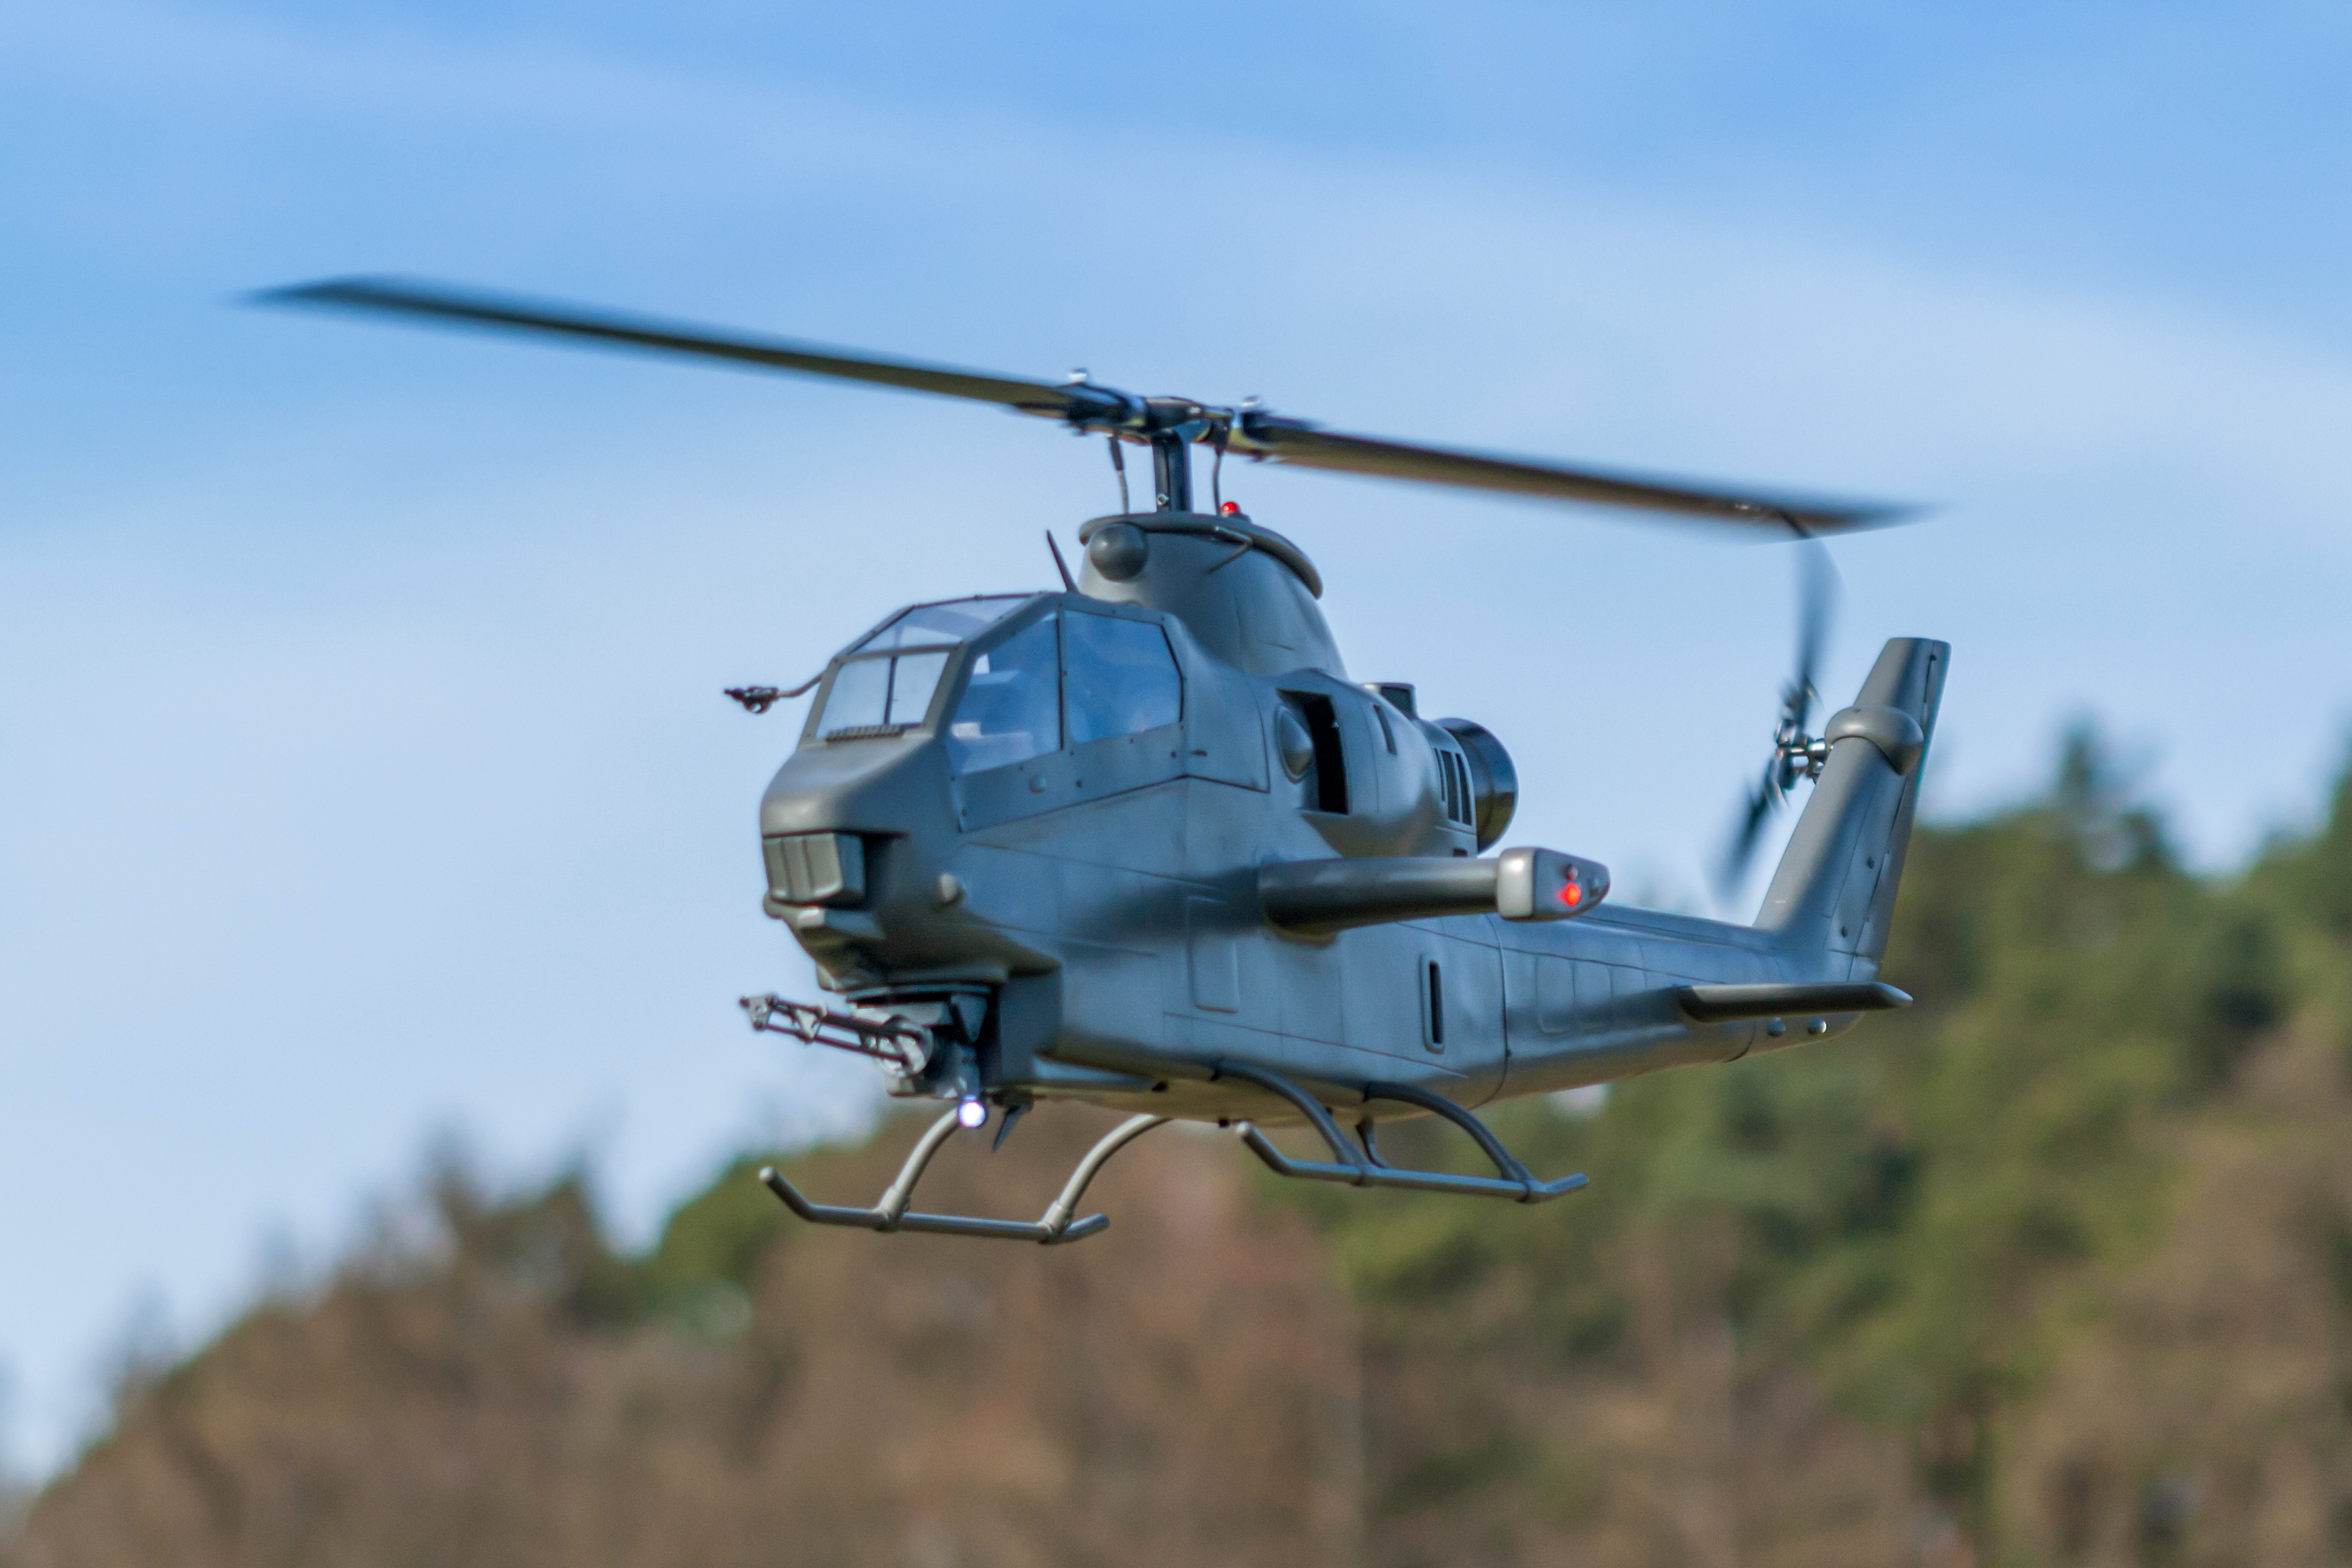 600er TF-Modell Cobra AH-1F